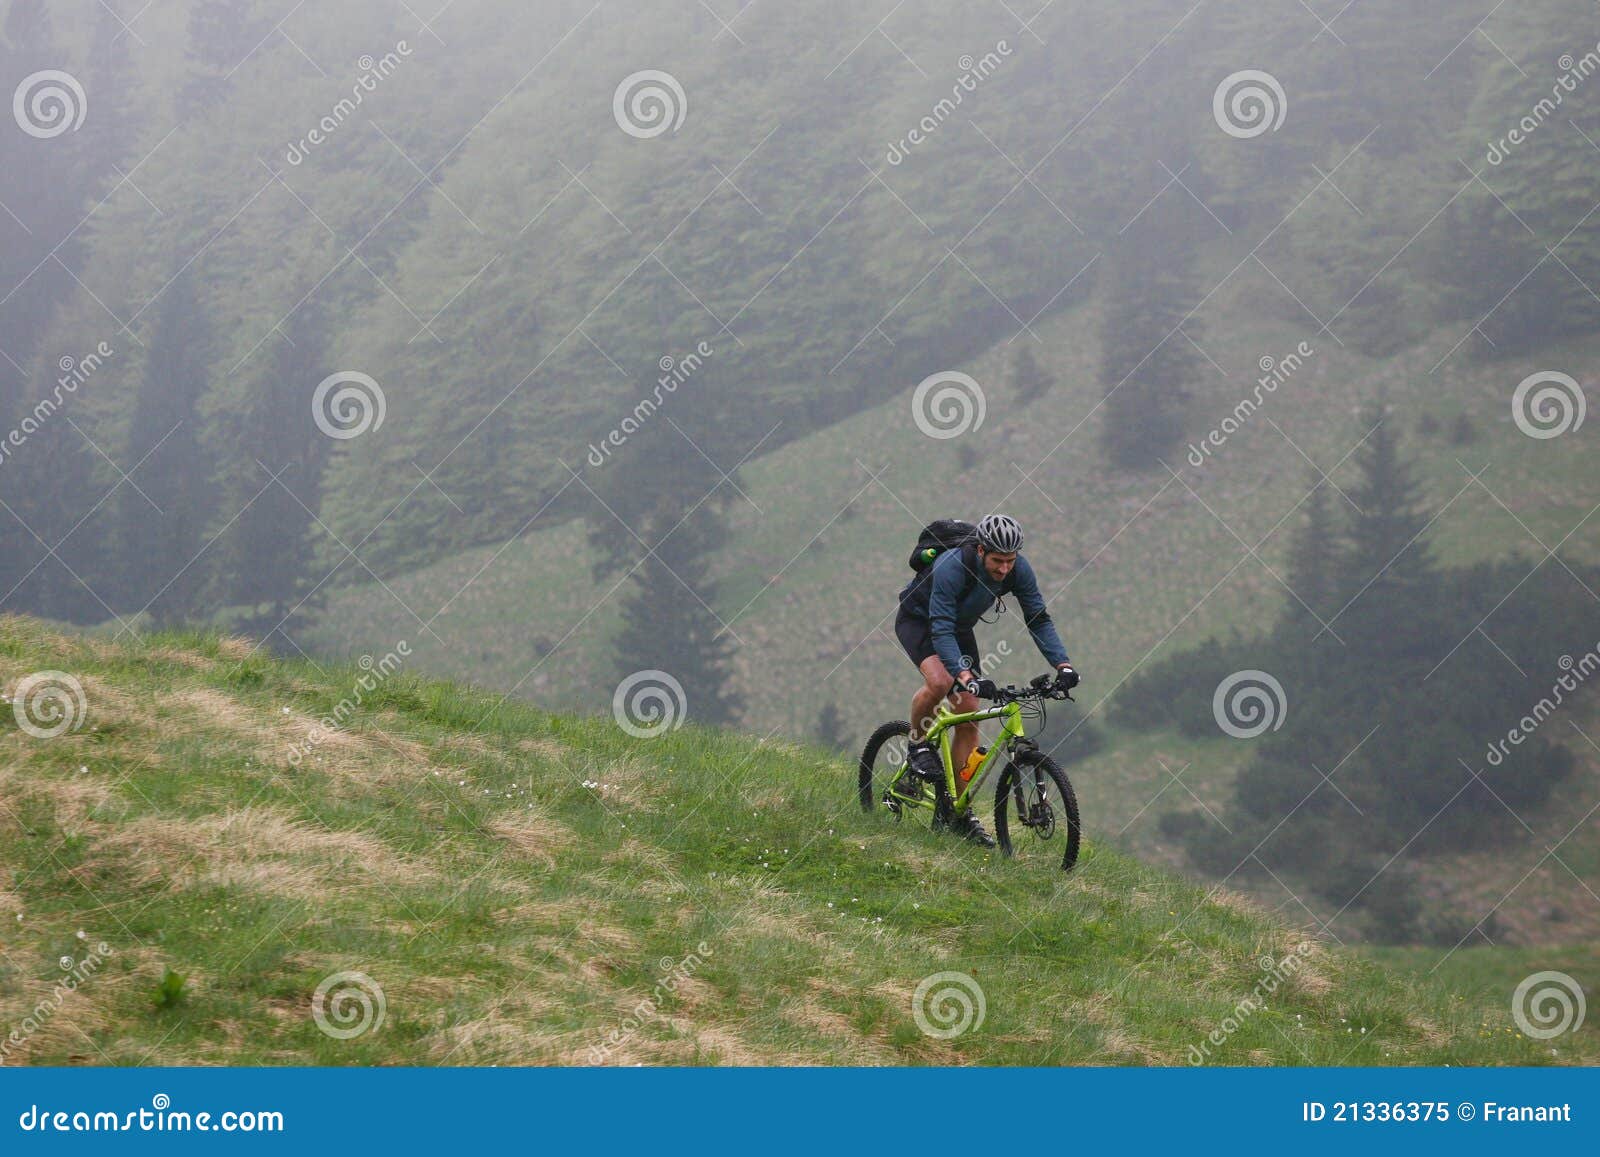 mountain biking spring